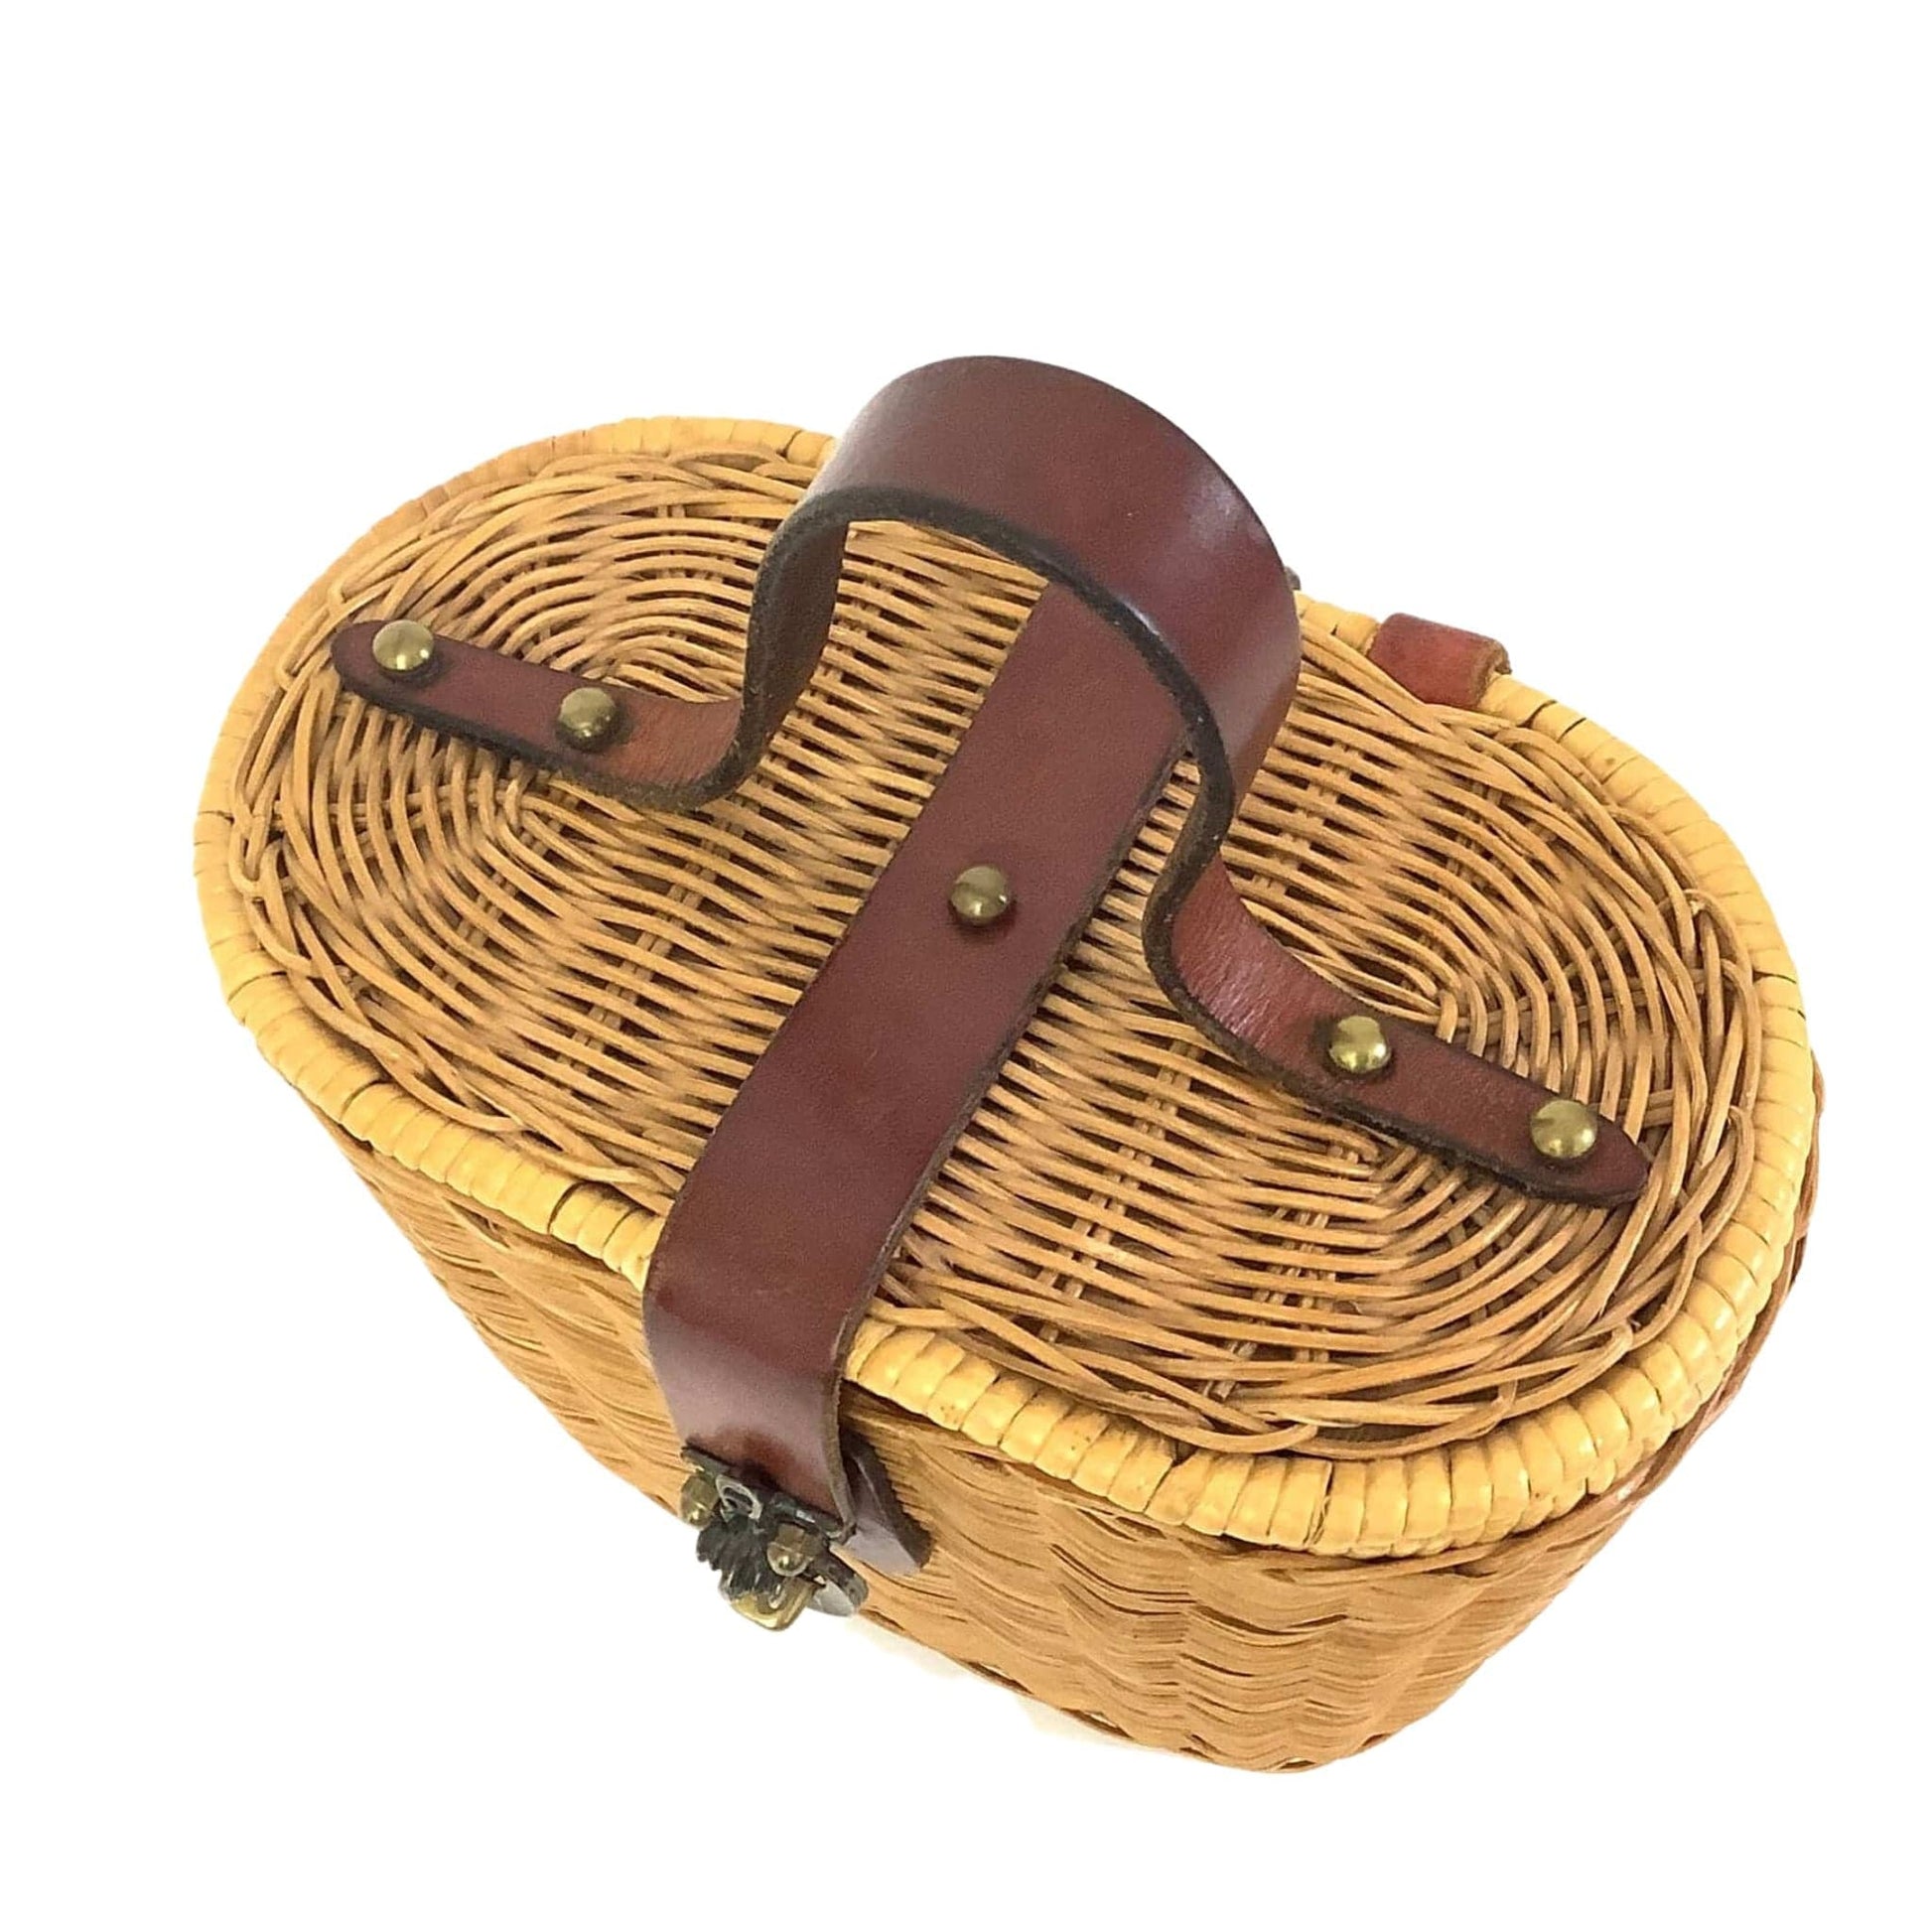 Vintage Aigner Basket Bag Natural / Natural Fibers / Vintage 1960s